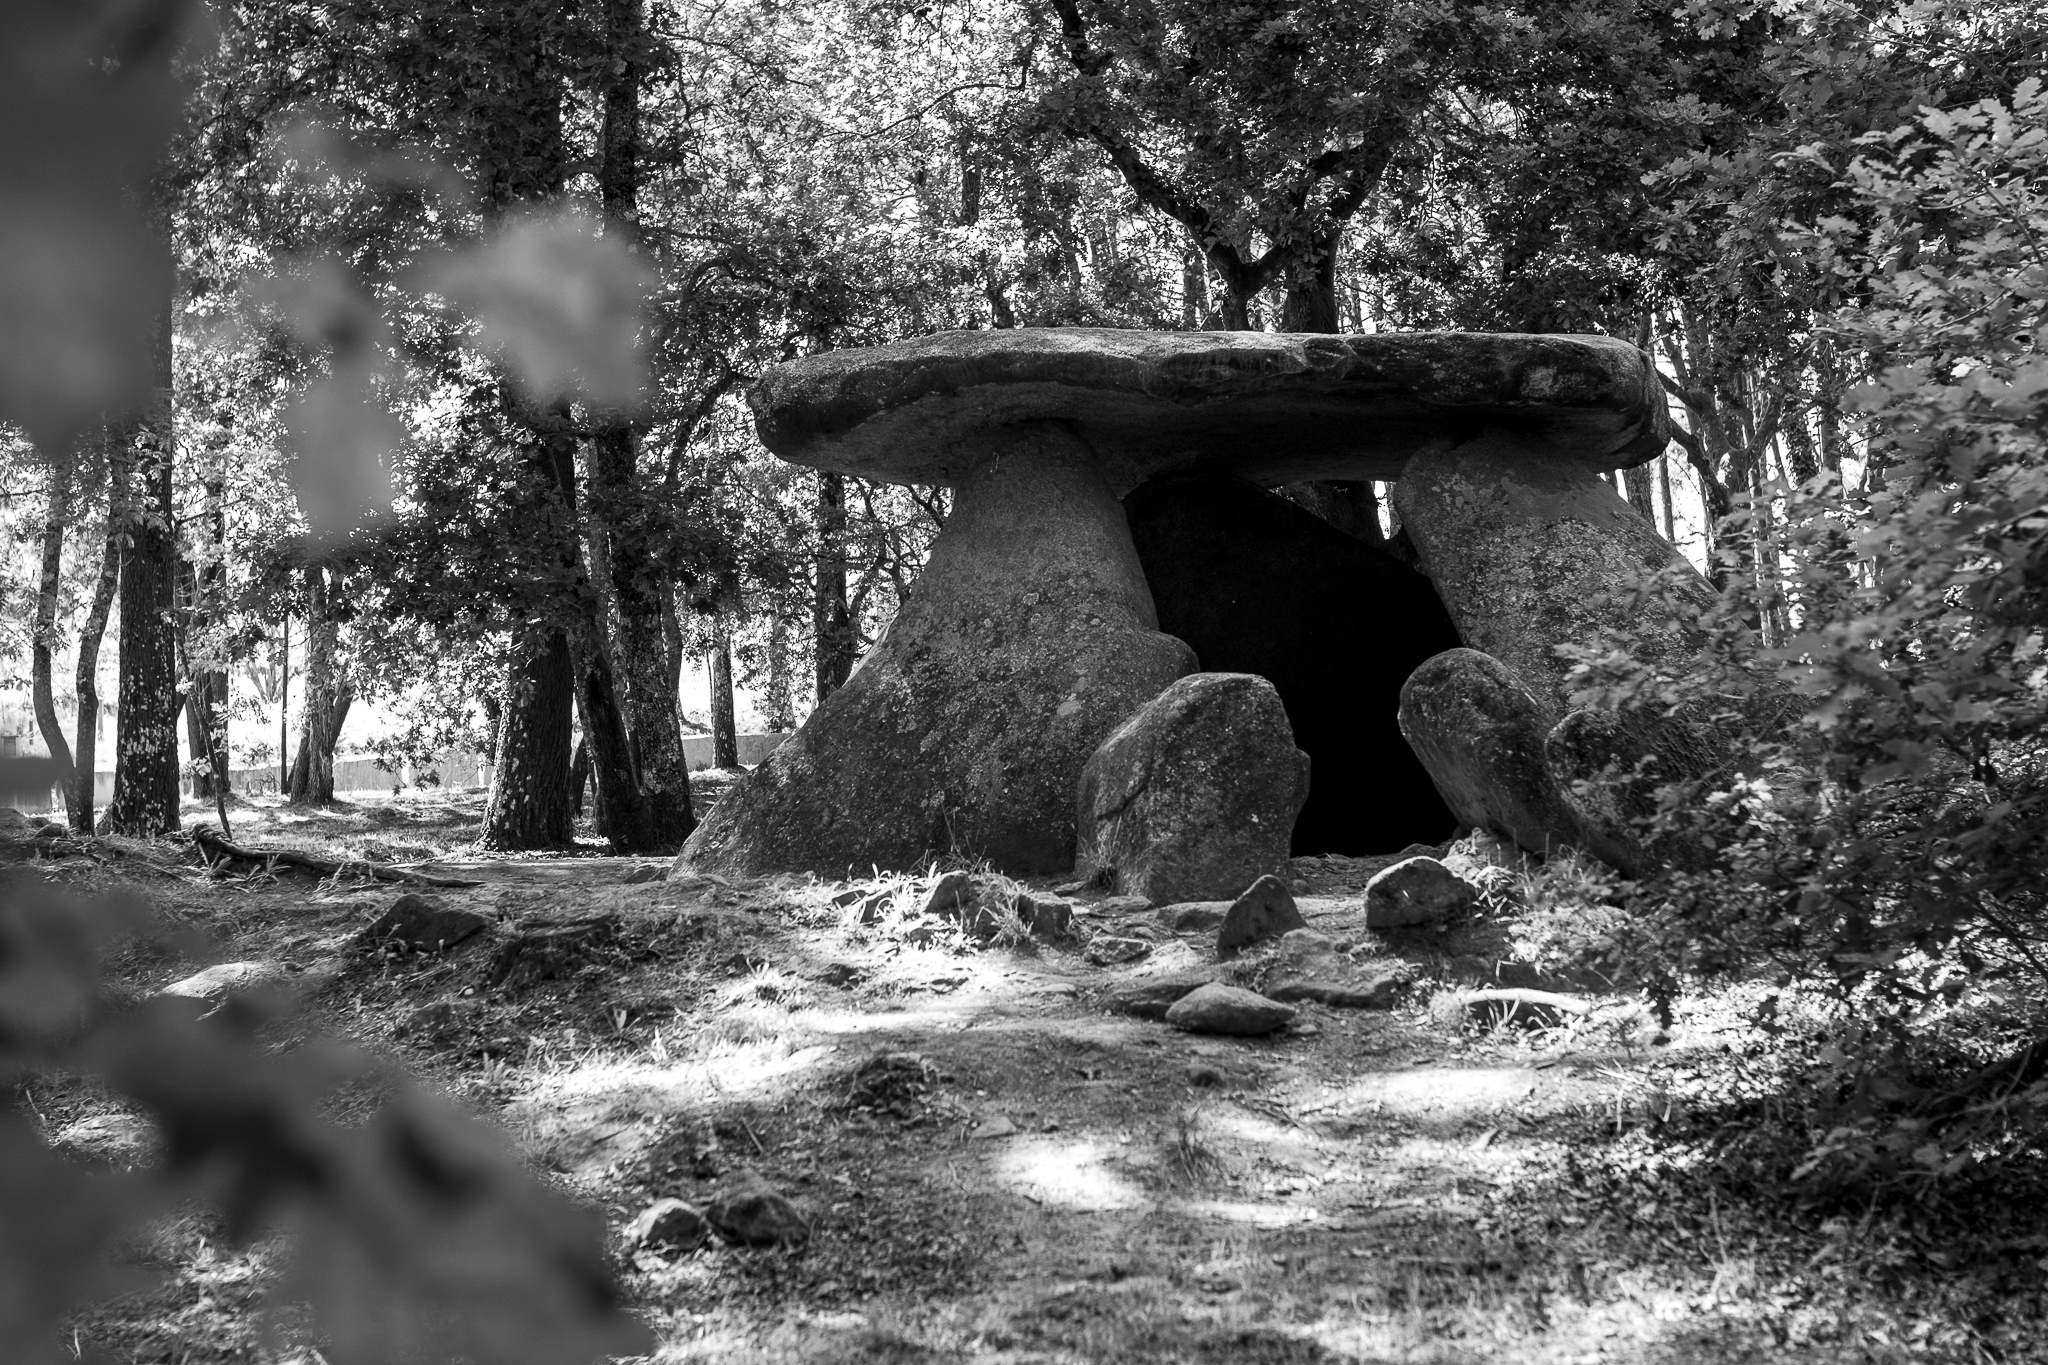 El dolmen de Axeitos o Pedra do Mouro data de entre el 4000 y el 3600 a. C. Situado en Oleiros, el dolmen está considerado el “partenón del megalitismo gallego”. Este, a través de un pequeño corredor, permitía acceder a una cámara funeraria.